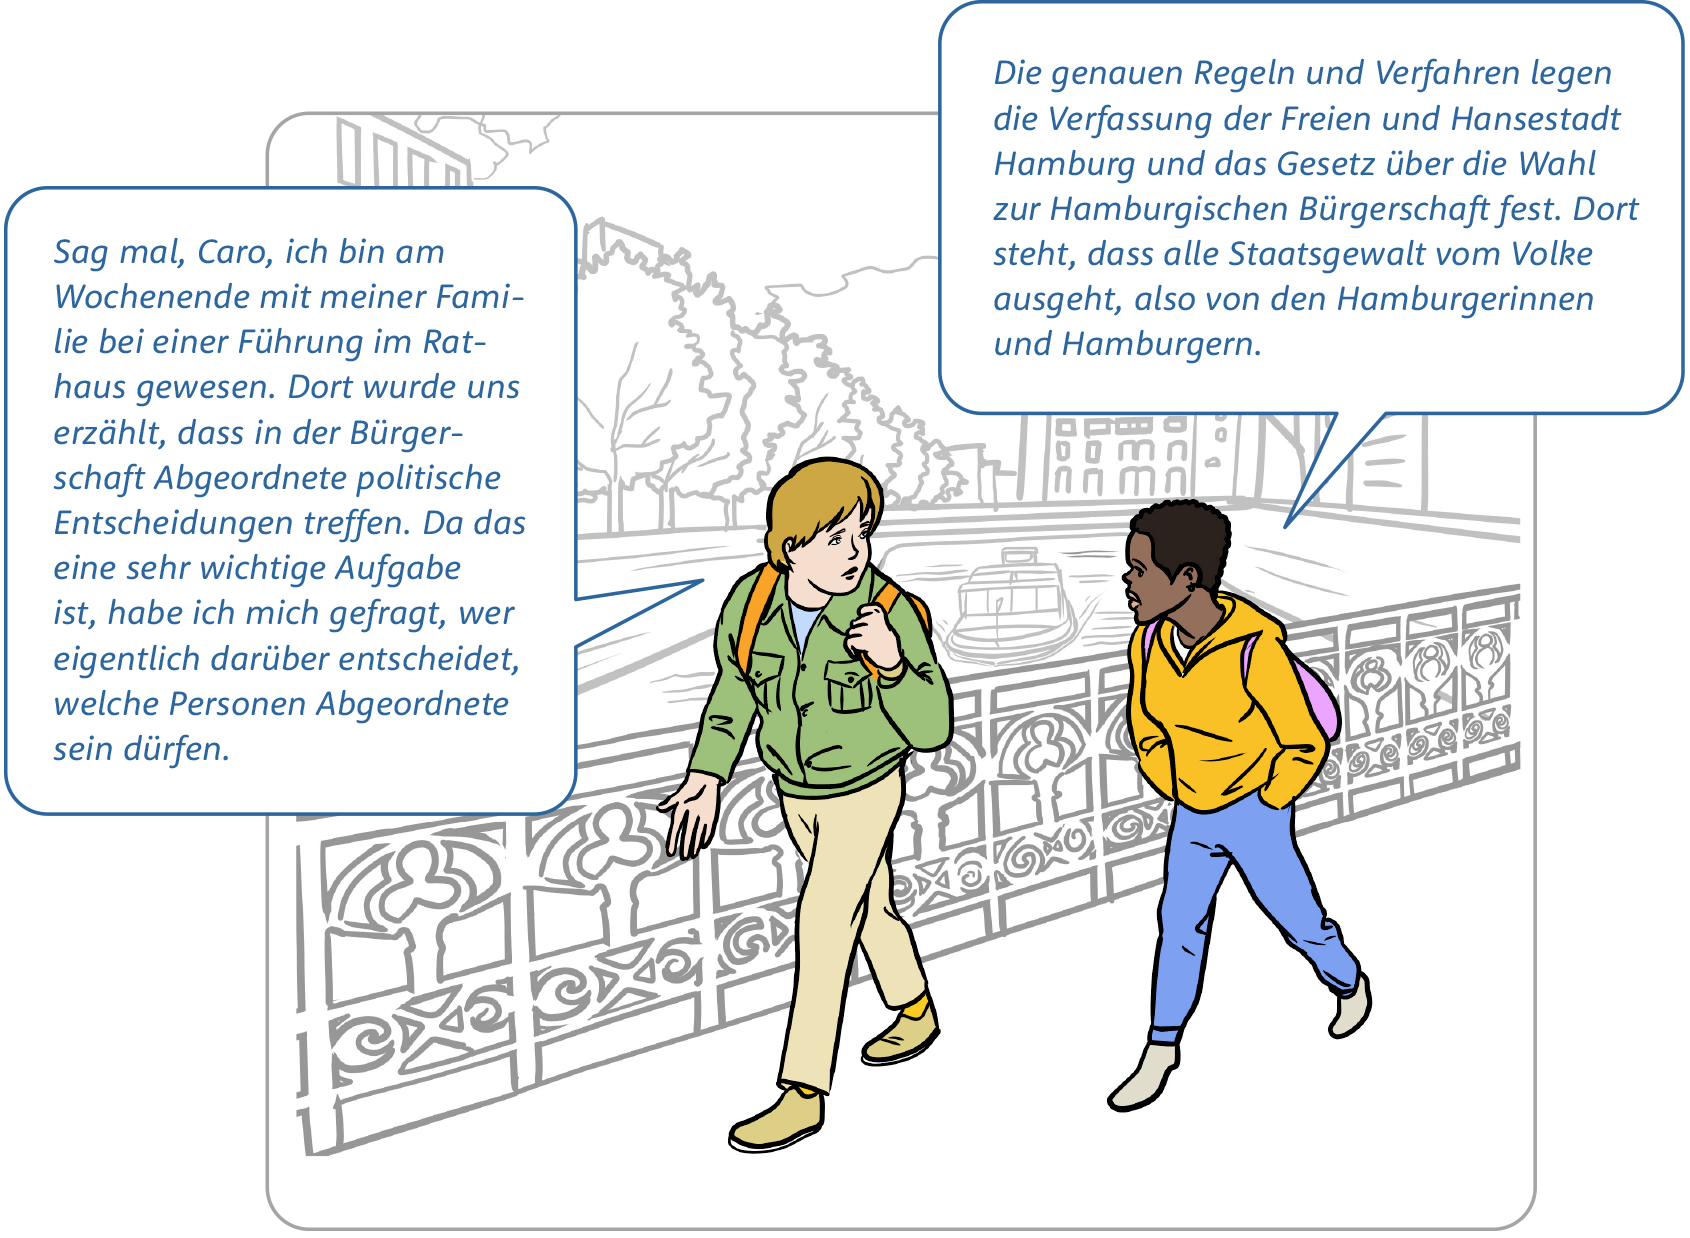 Comic Bild 1: Zwei Jugendliche, ein Junge und ein Mädchen gehen nebeneinander über eine Brücke in der Hamburger Speicherstadt. Beide tragen Rucksäcke. Ihre Köpfe sind einander zugewandt. (Den Text aus den Sprechblasen findest du am Ende der Bildstrecke.)